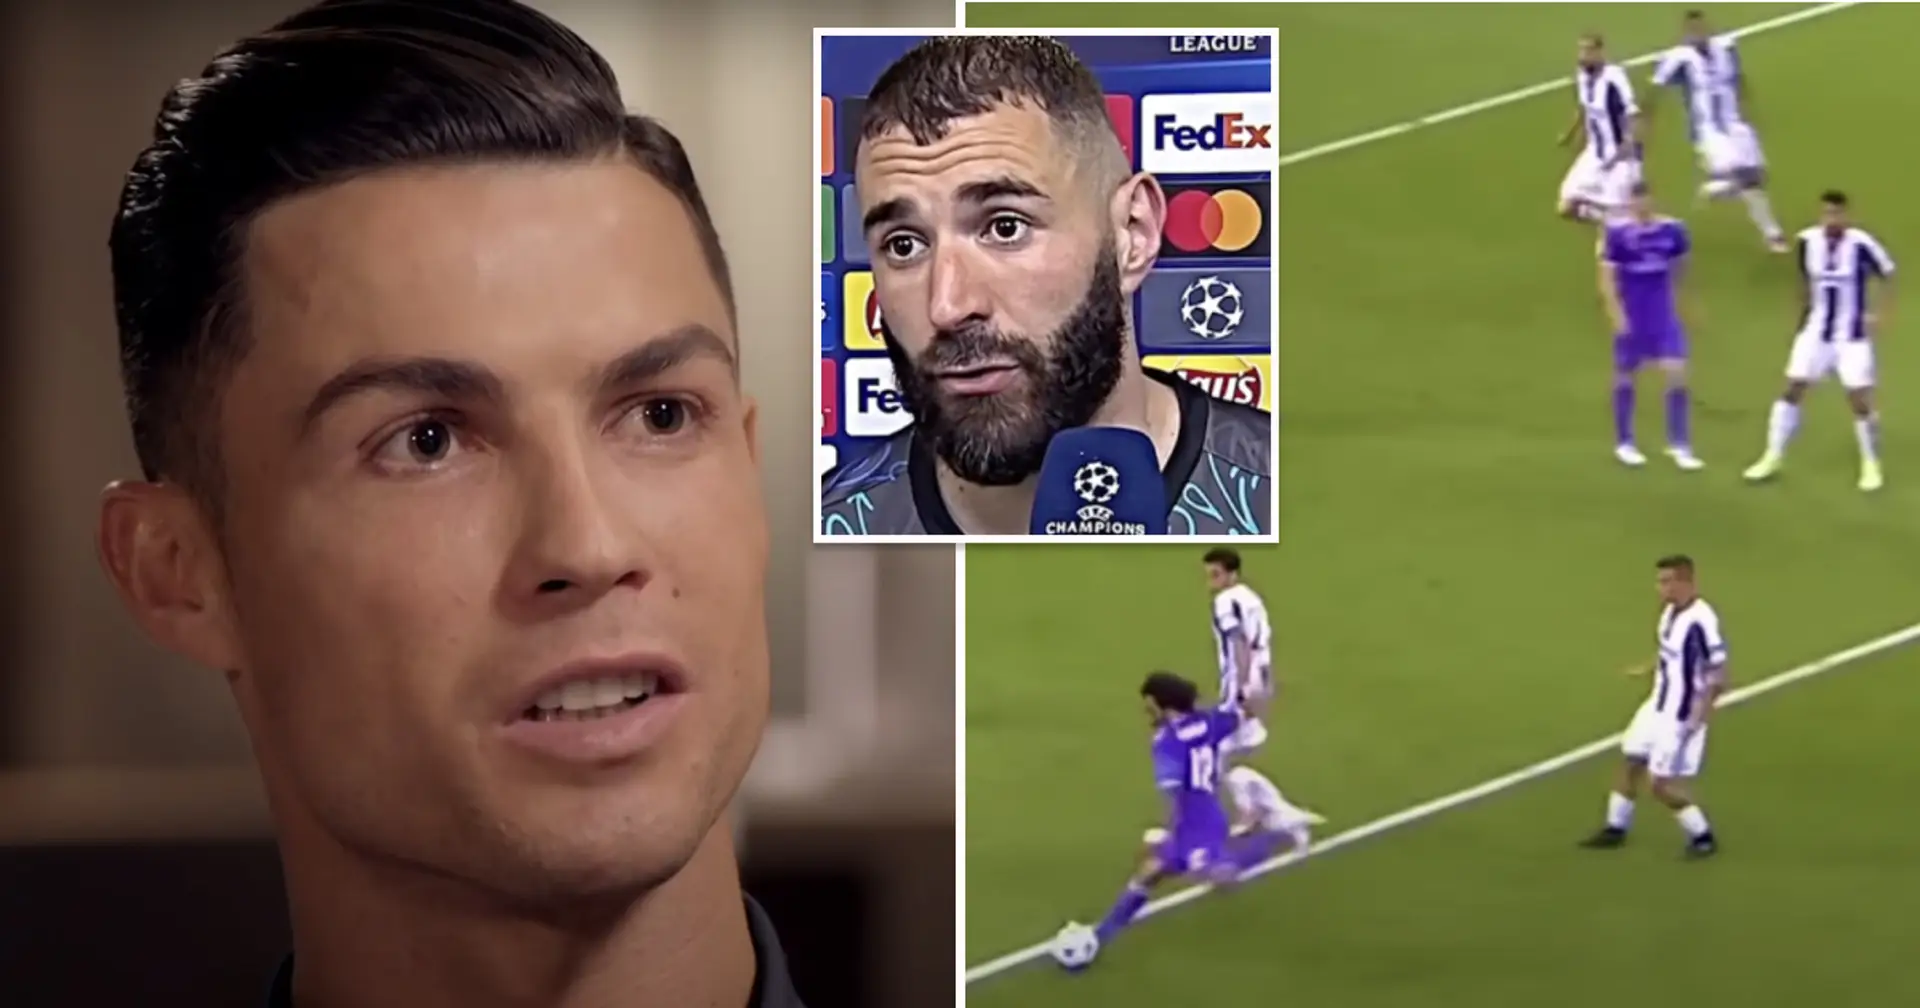 7 madridistas: Cristiano Ronaldo revela el mejor XI de jugadores con los que ha jugado